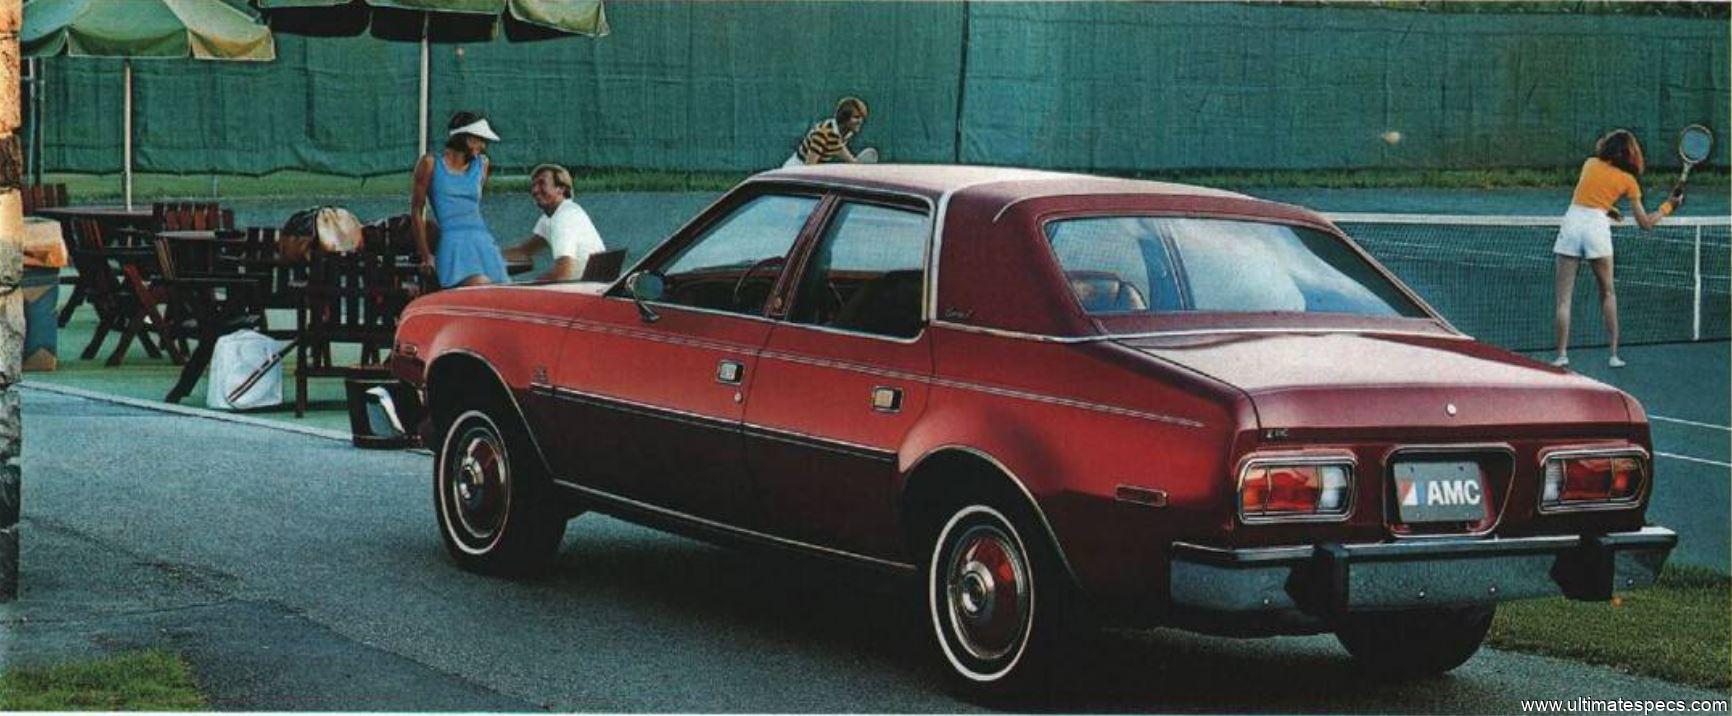 AMC Concord 4-Door 1978